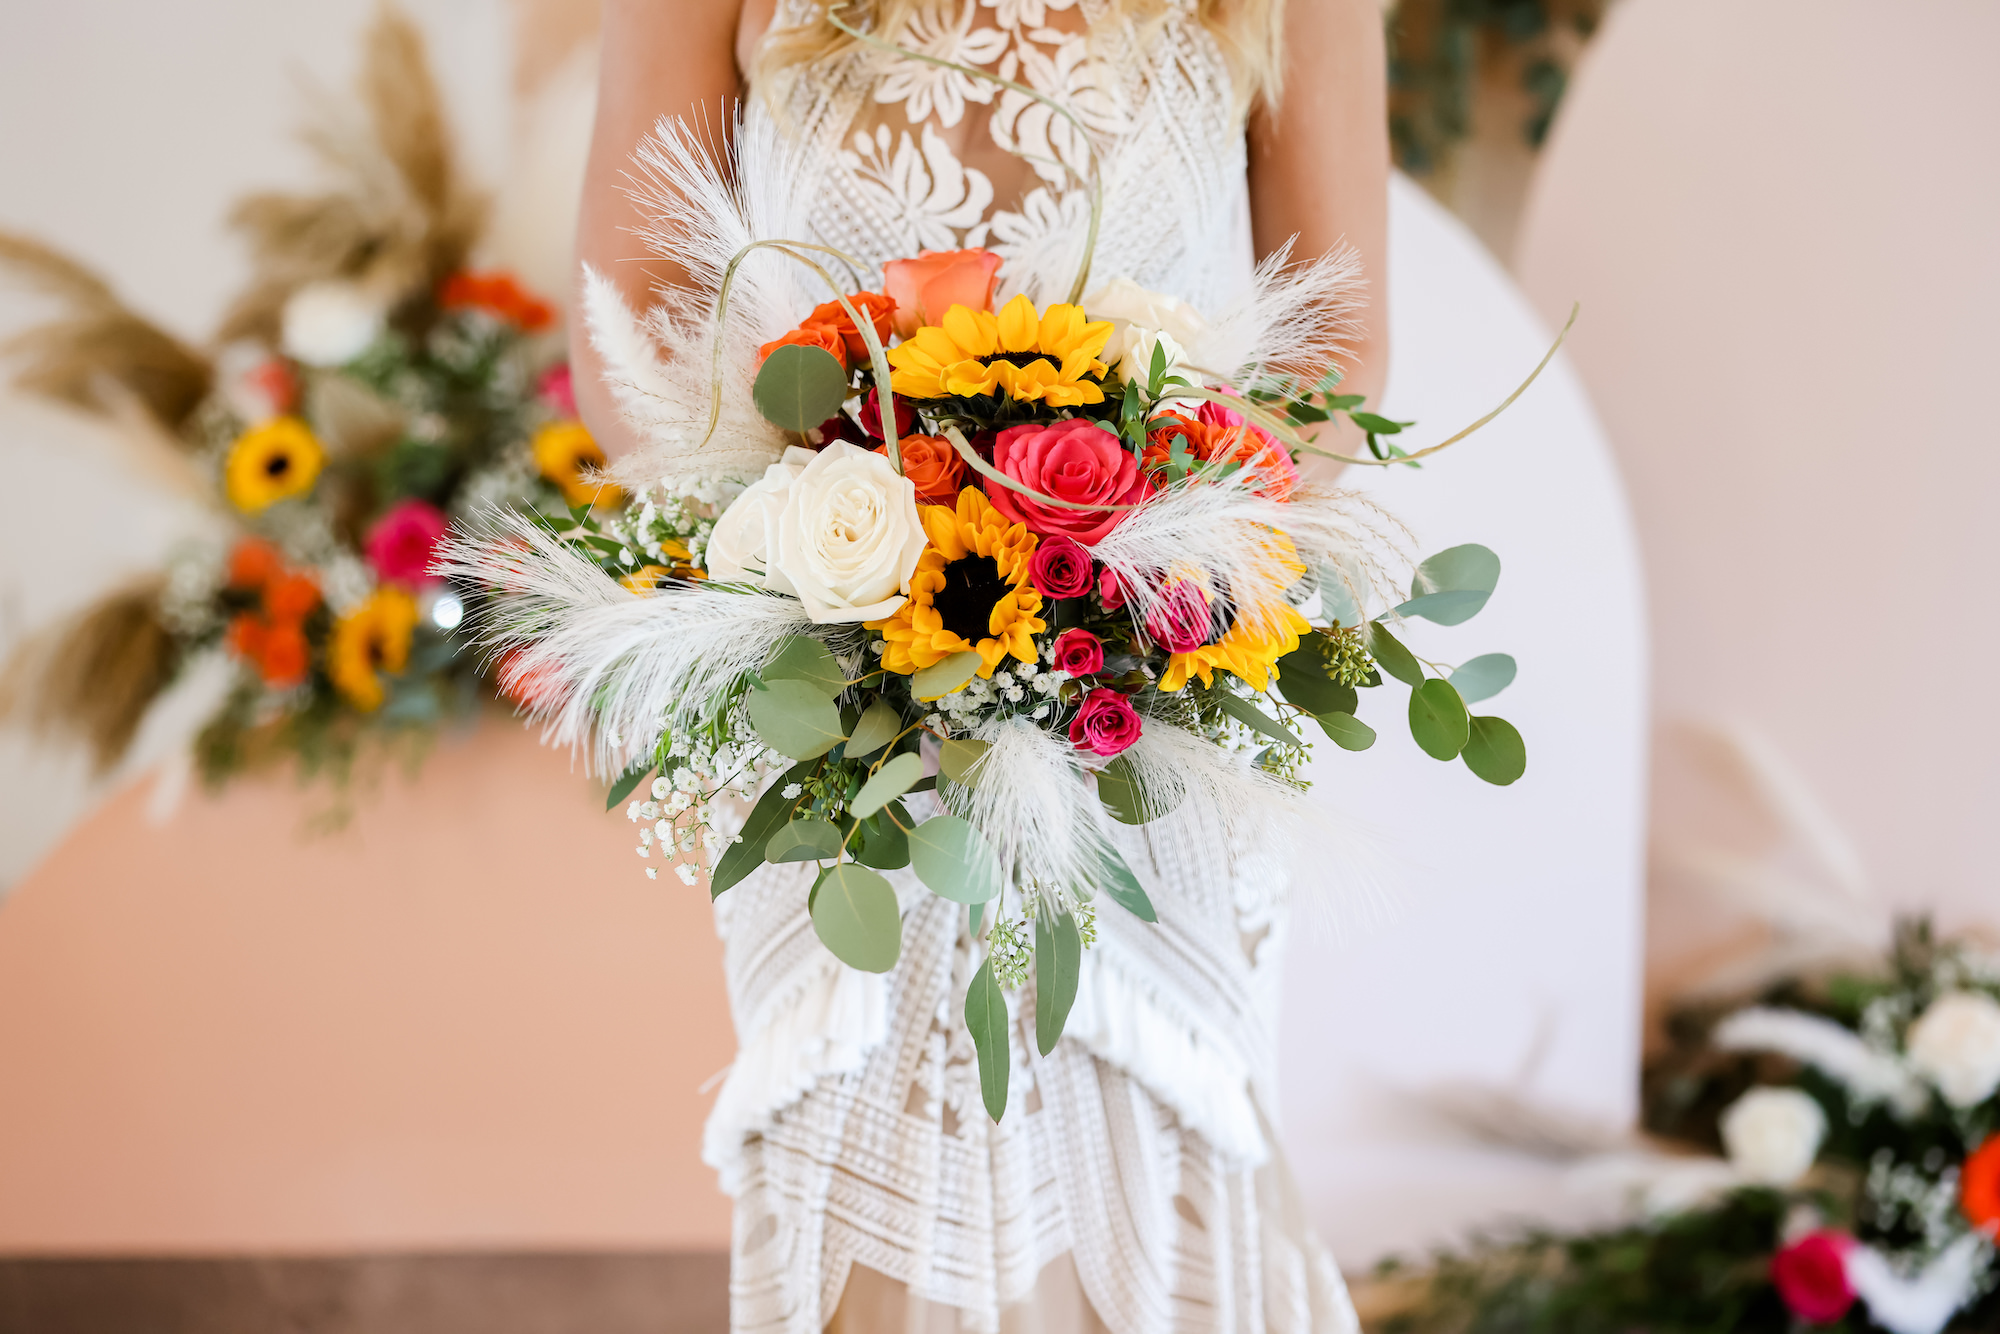 Fall Boho Bridal Wedding Bouquet Ideas